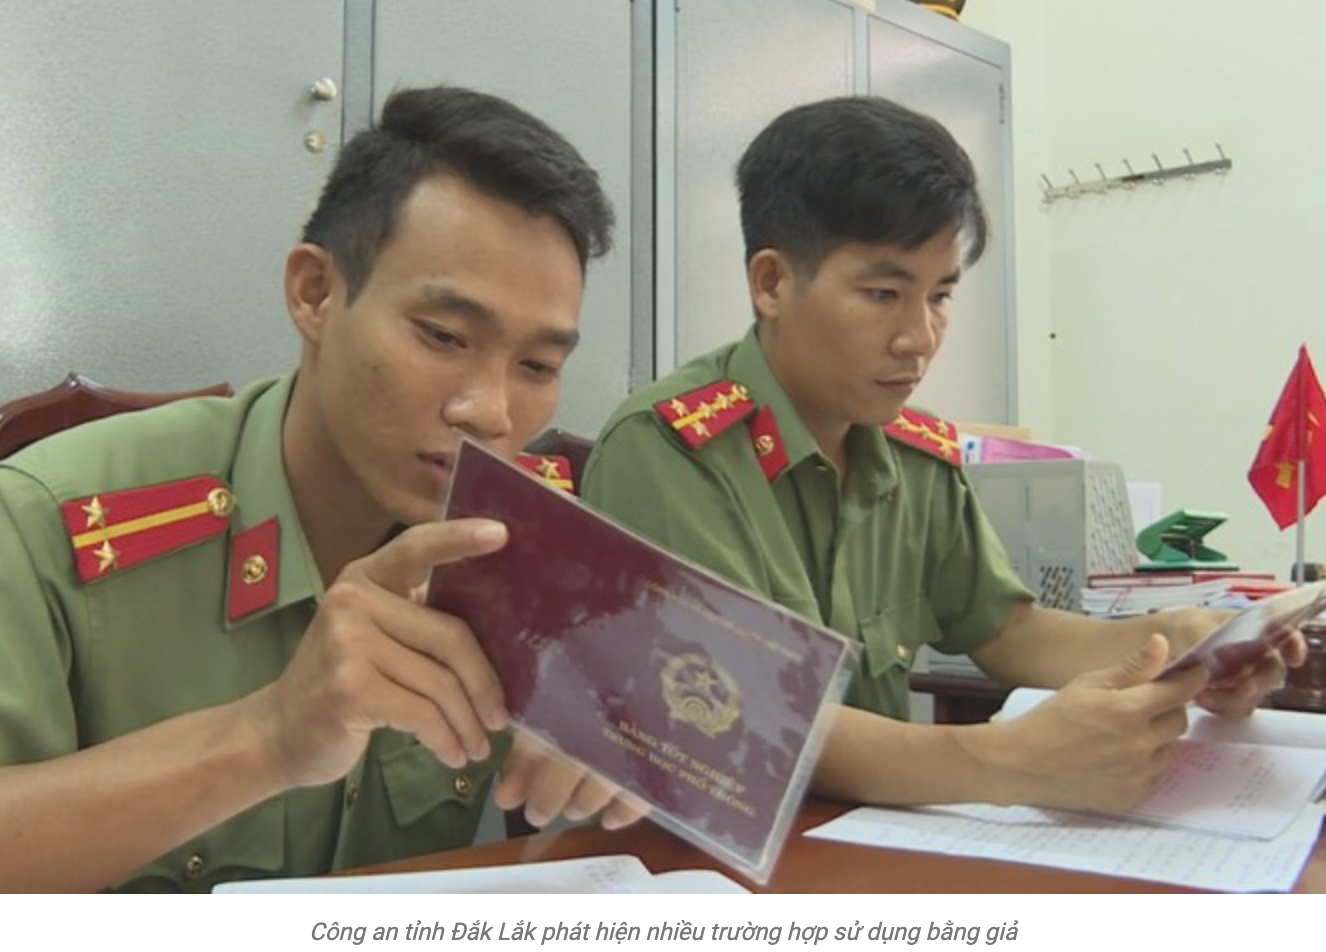 Công an tỉnh Đắk Lắk phát hiện nhiều trường hợp sử dụng bằng giả trong cơ quan nhà nước.